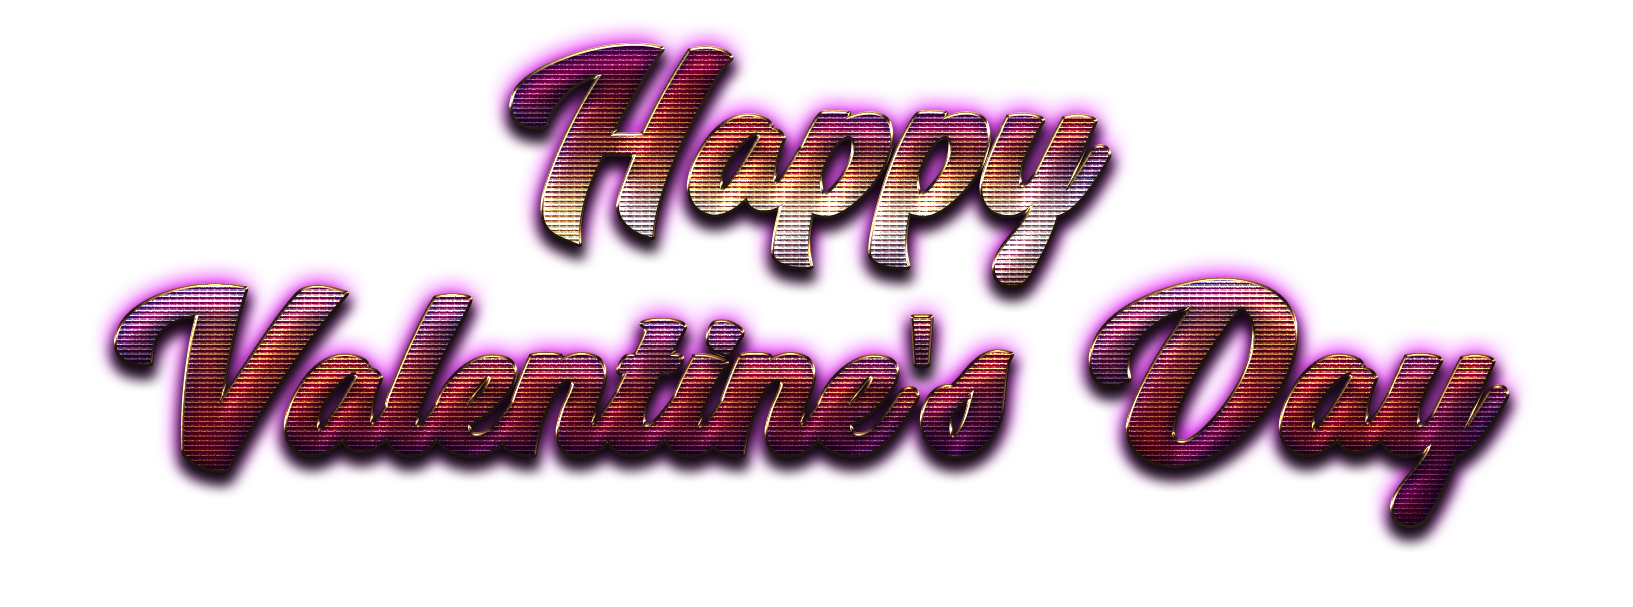 С Днем Святого Валентина PNG скачать бесплатно